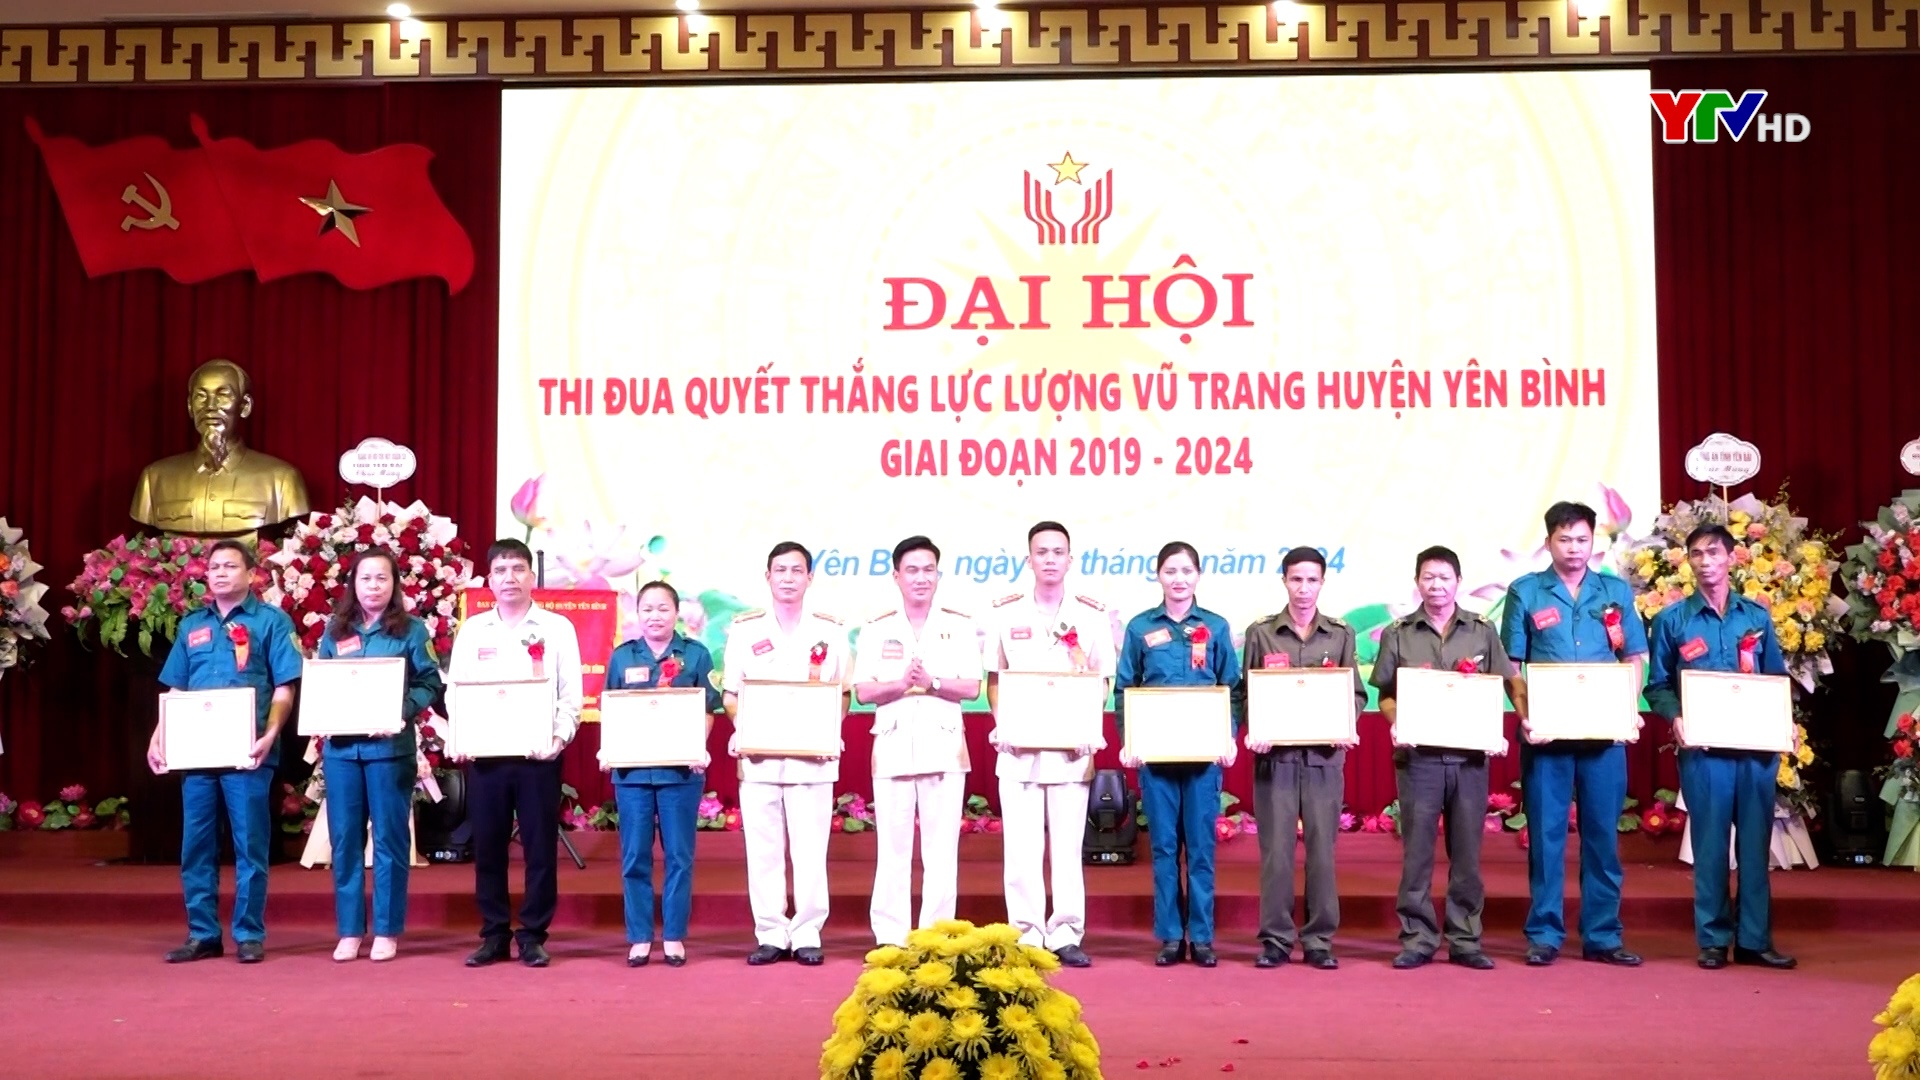 Đại hội thi đua quyết thắng LLVT huyện Yên Bình, giai đoạn 2019 - 2024